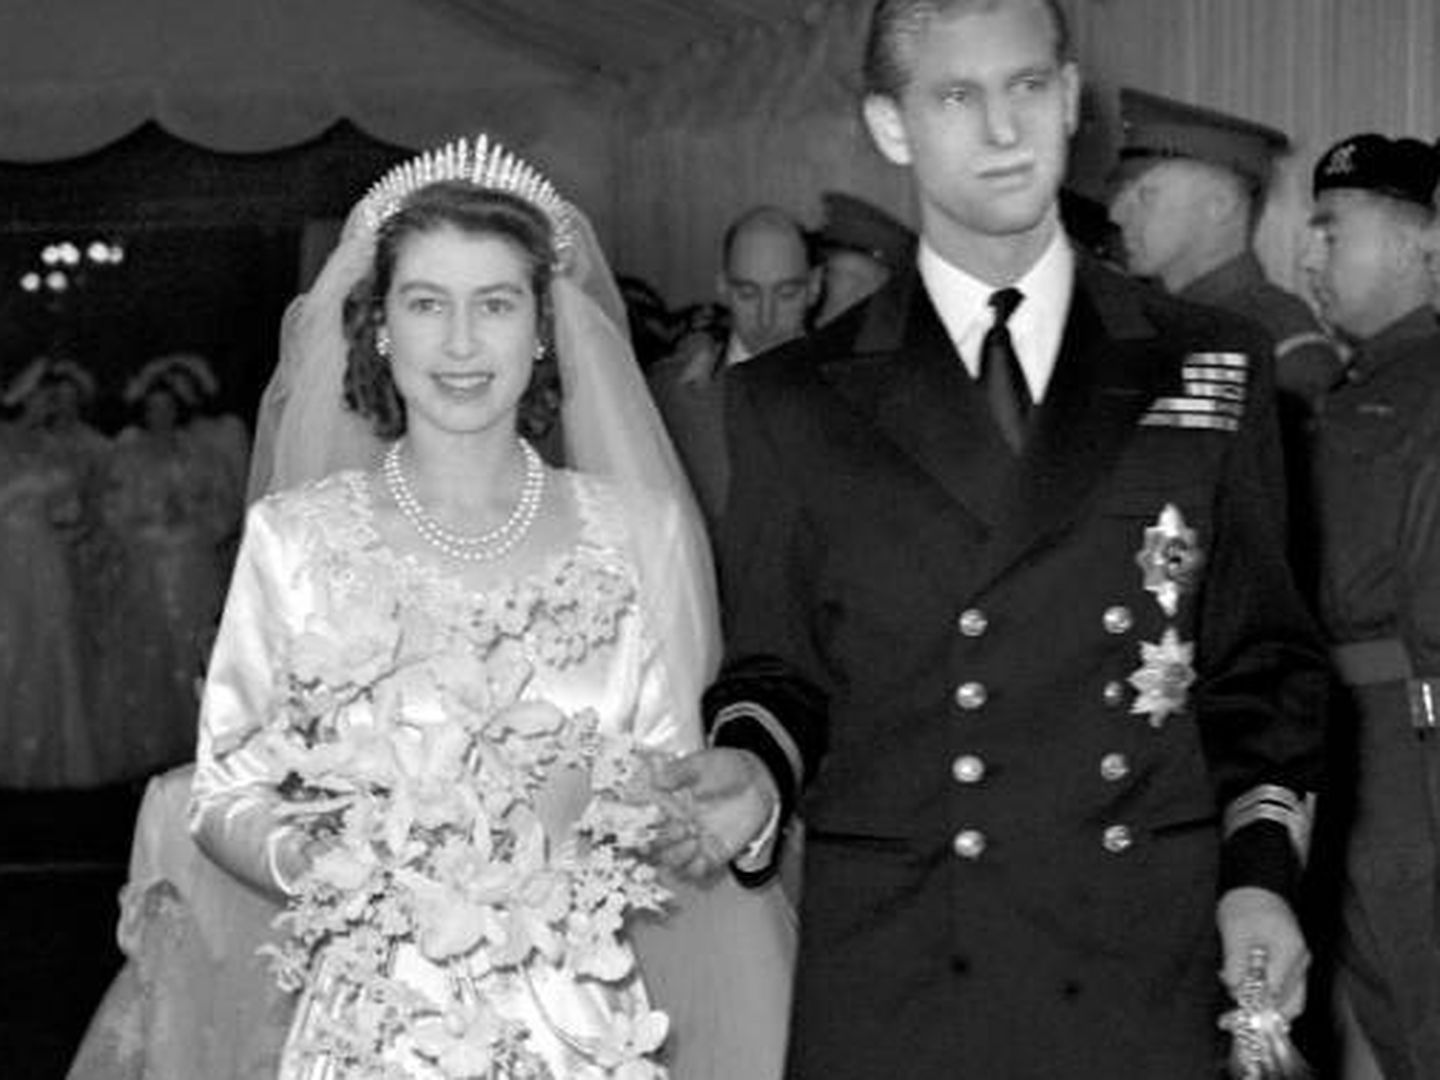  La reina Isabel II y el duque de Edimburgo, Felipe Mountbatten, el día de su boda. (Archivo)